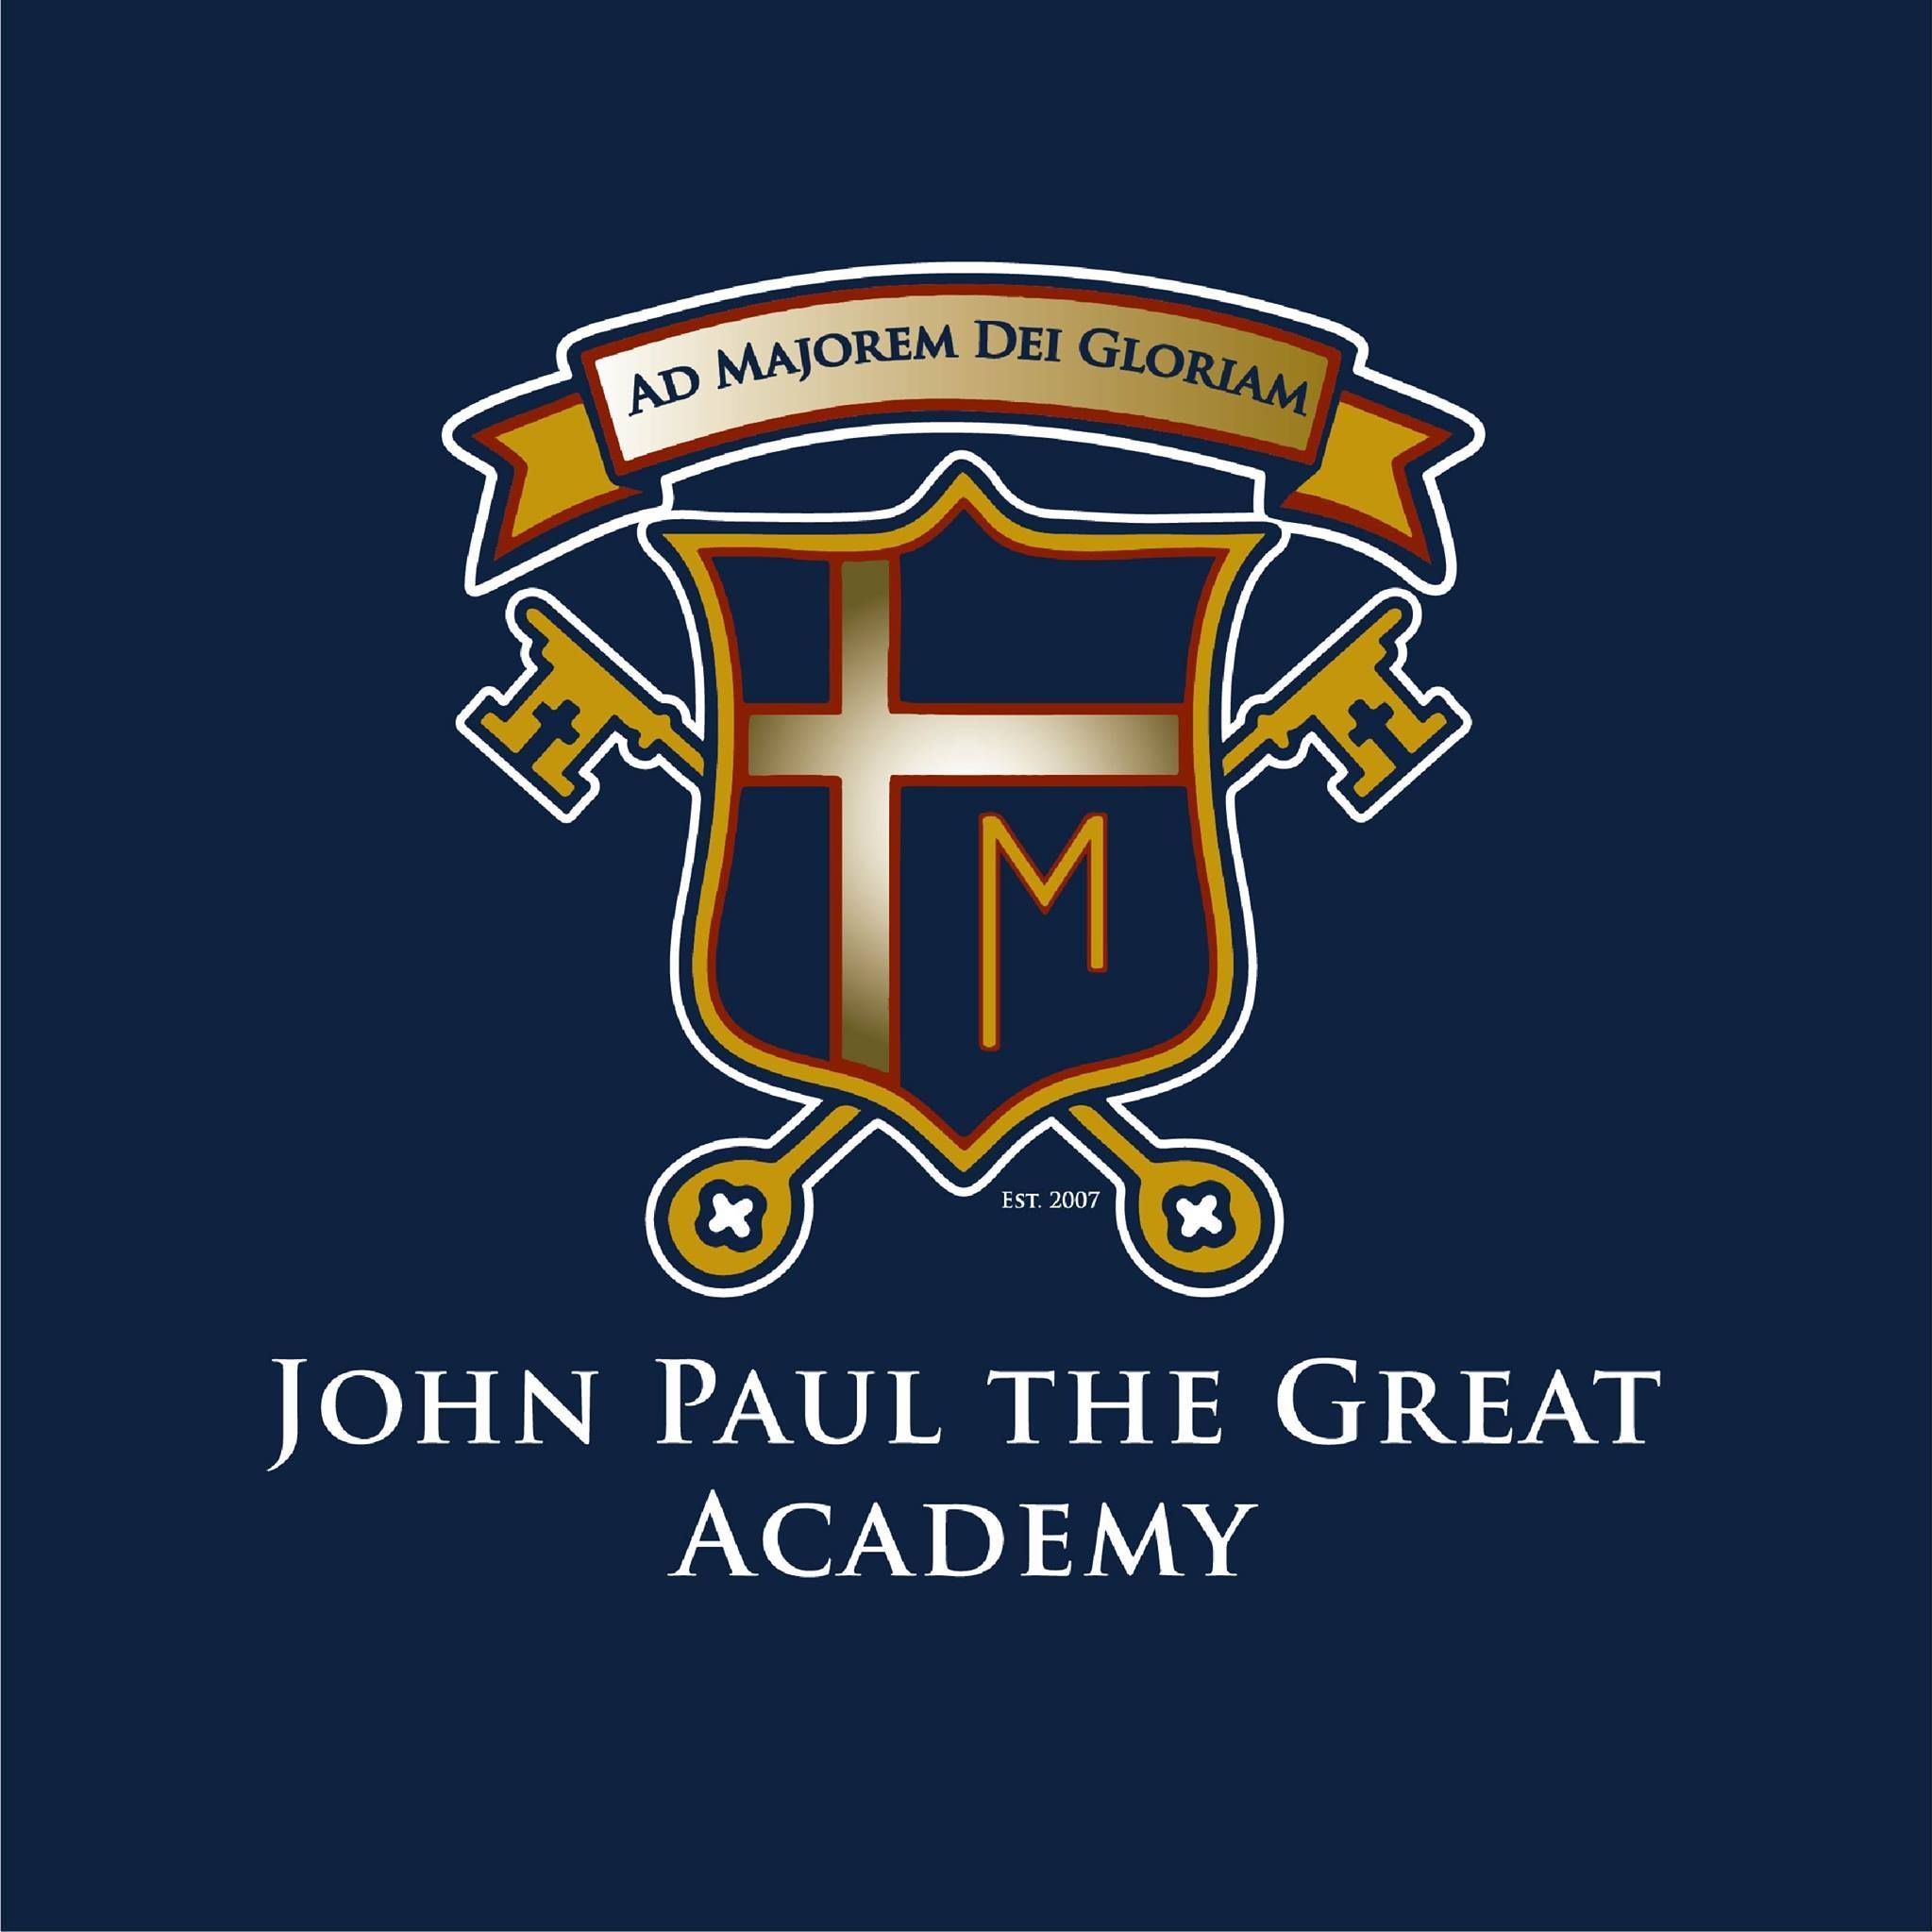 John Paul the Great Academy